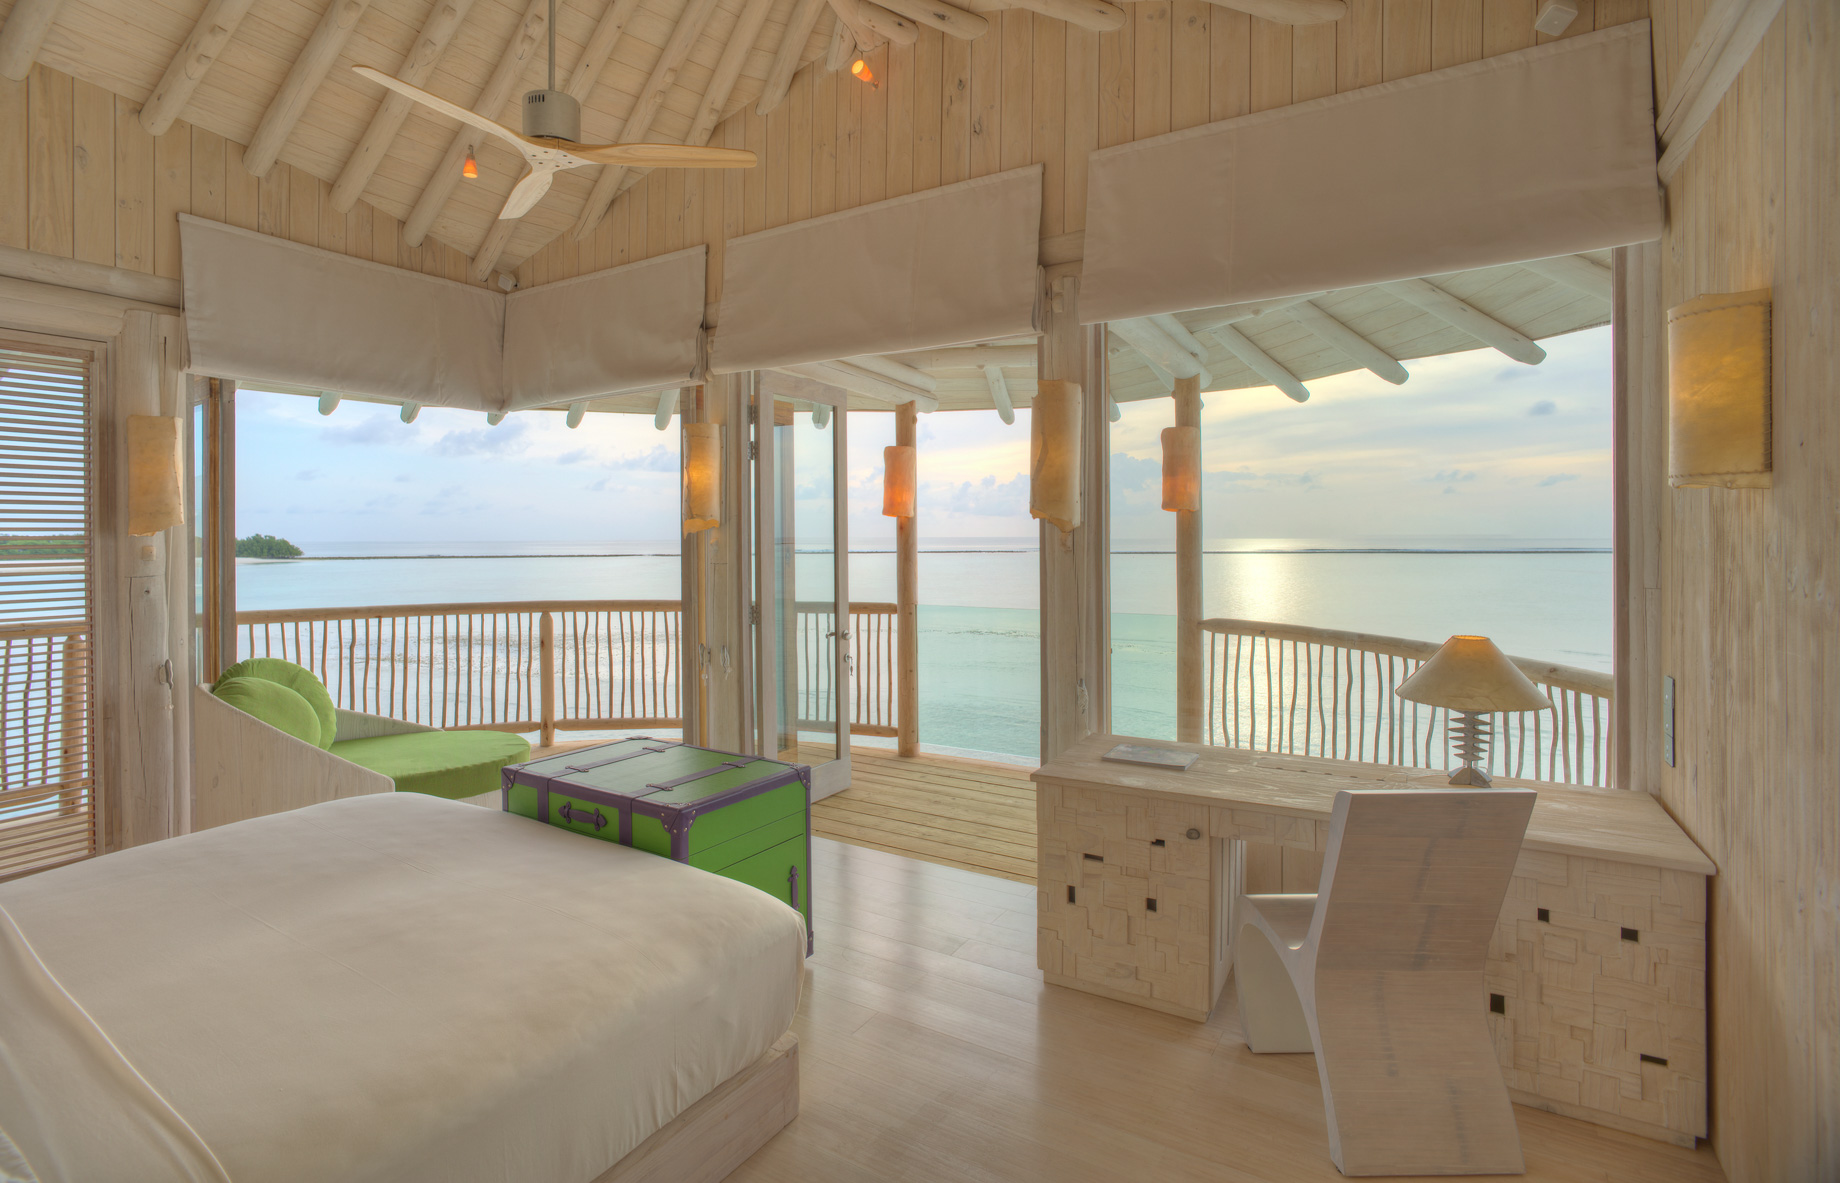 Soneva Jani Resort – Noonu Atoll, Medhufaru, Maldives – 2 Bedroom Water Retreat Villa Bedroom View Dusk